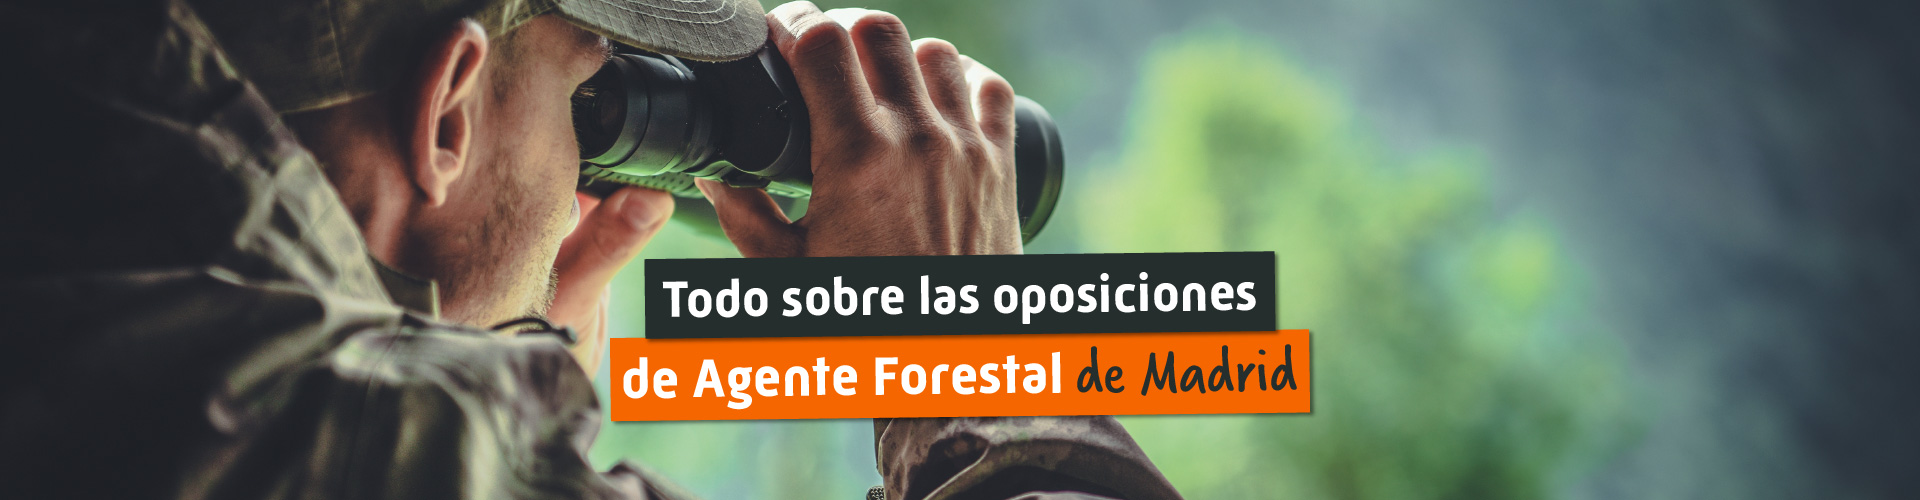 Oposiciones de Agente Forestal de Madrid